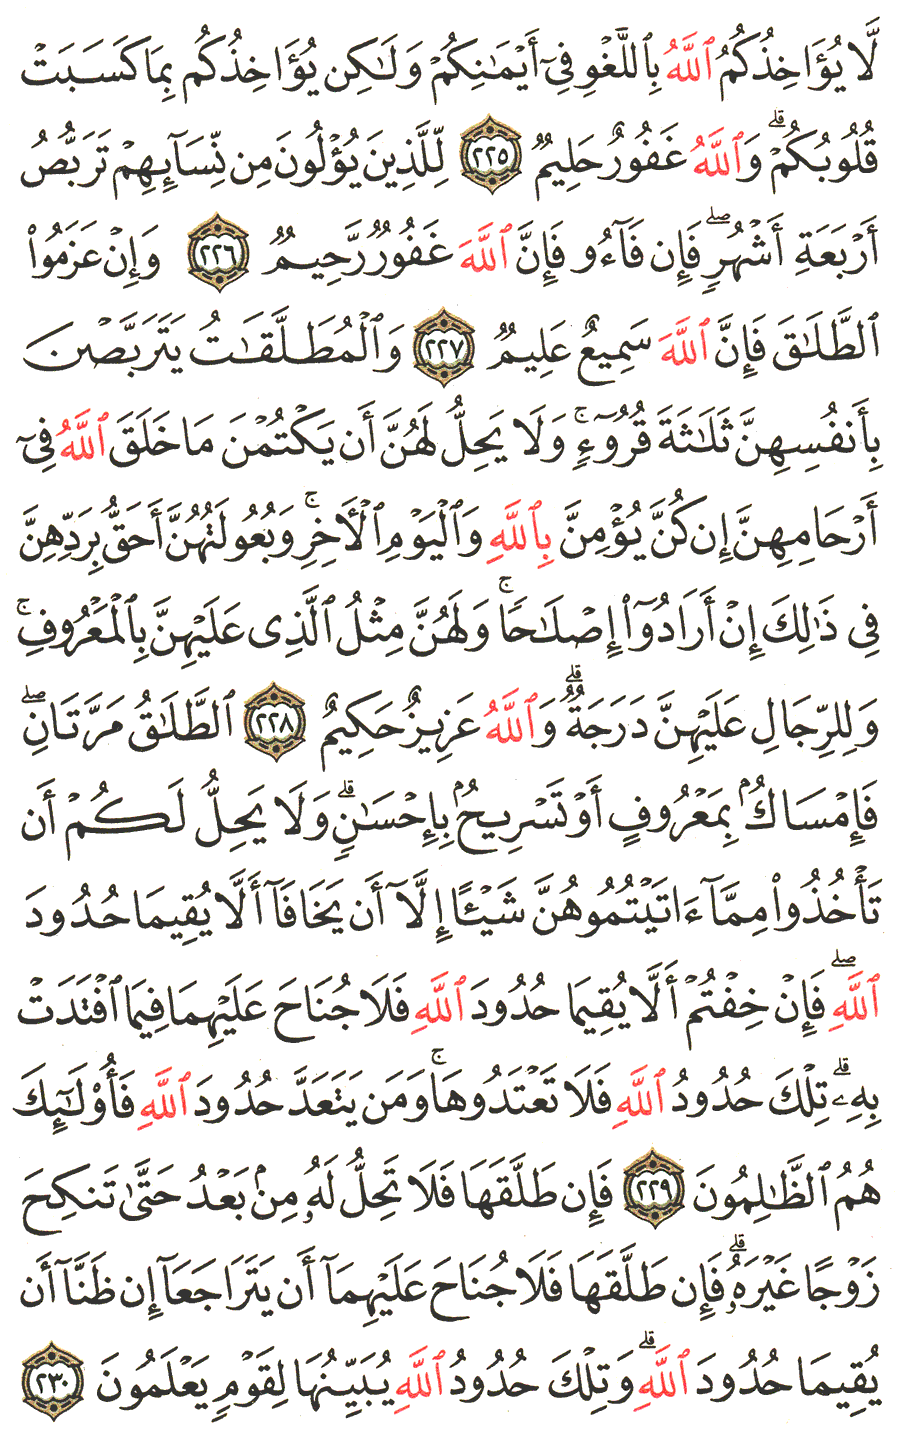 الصفحة رقم  36 من القرآن الكريم مكتوبة من المصحف